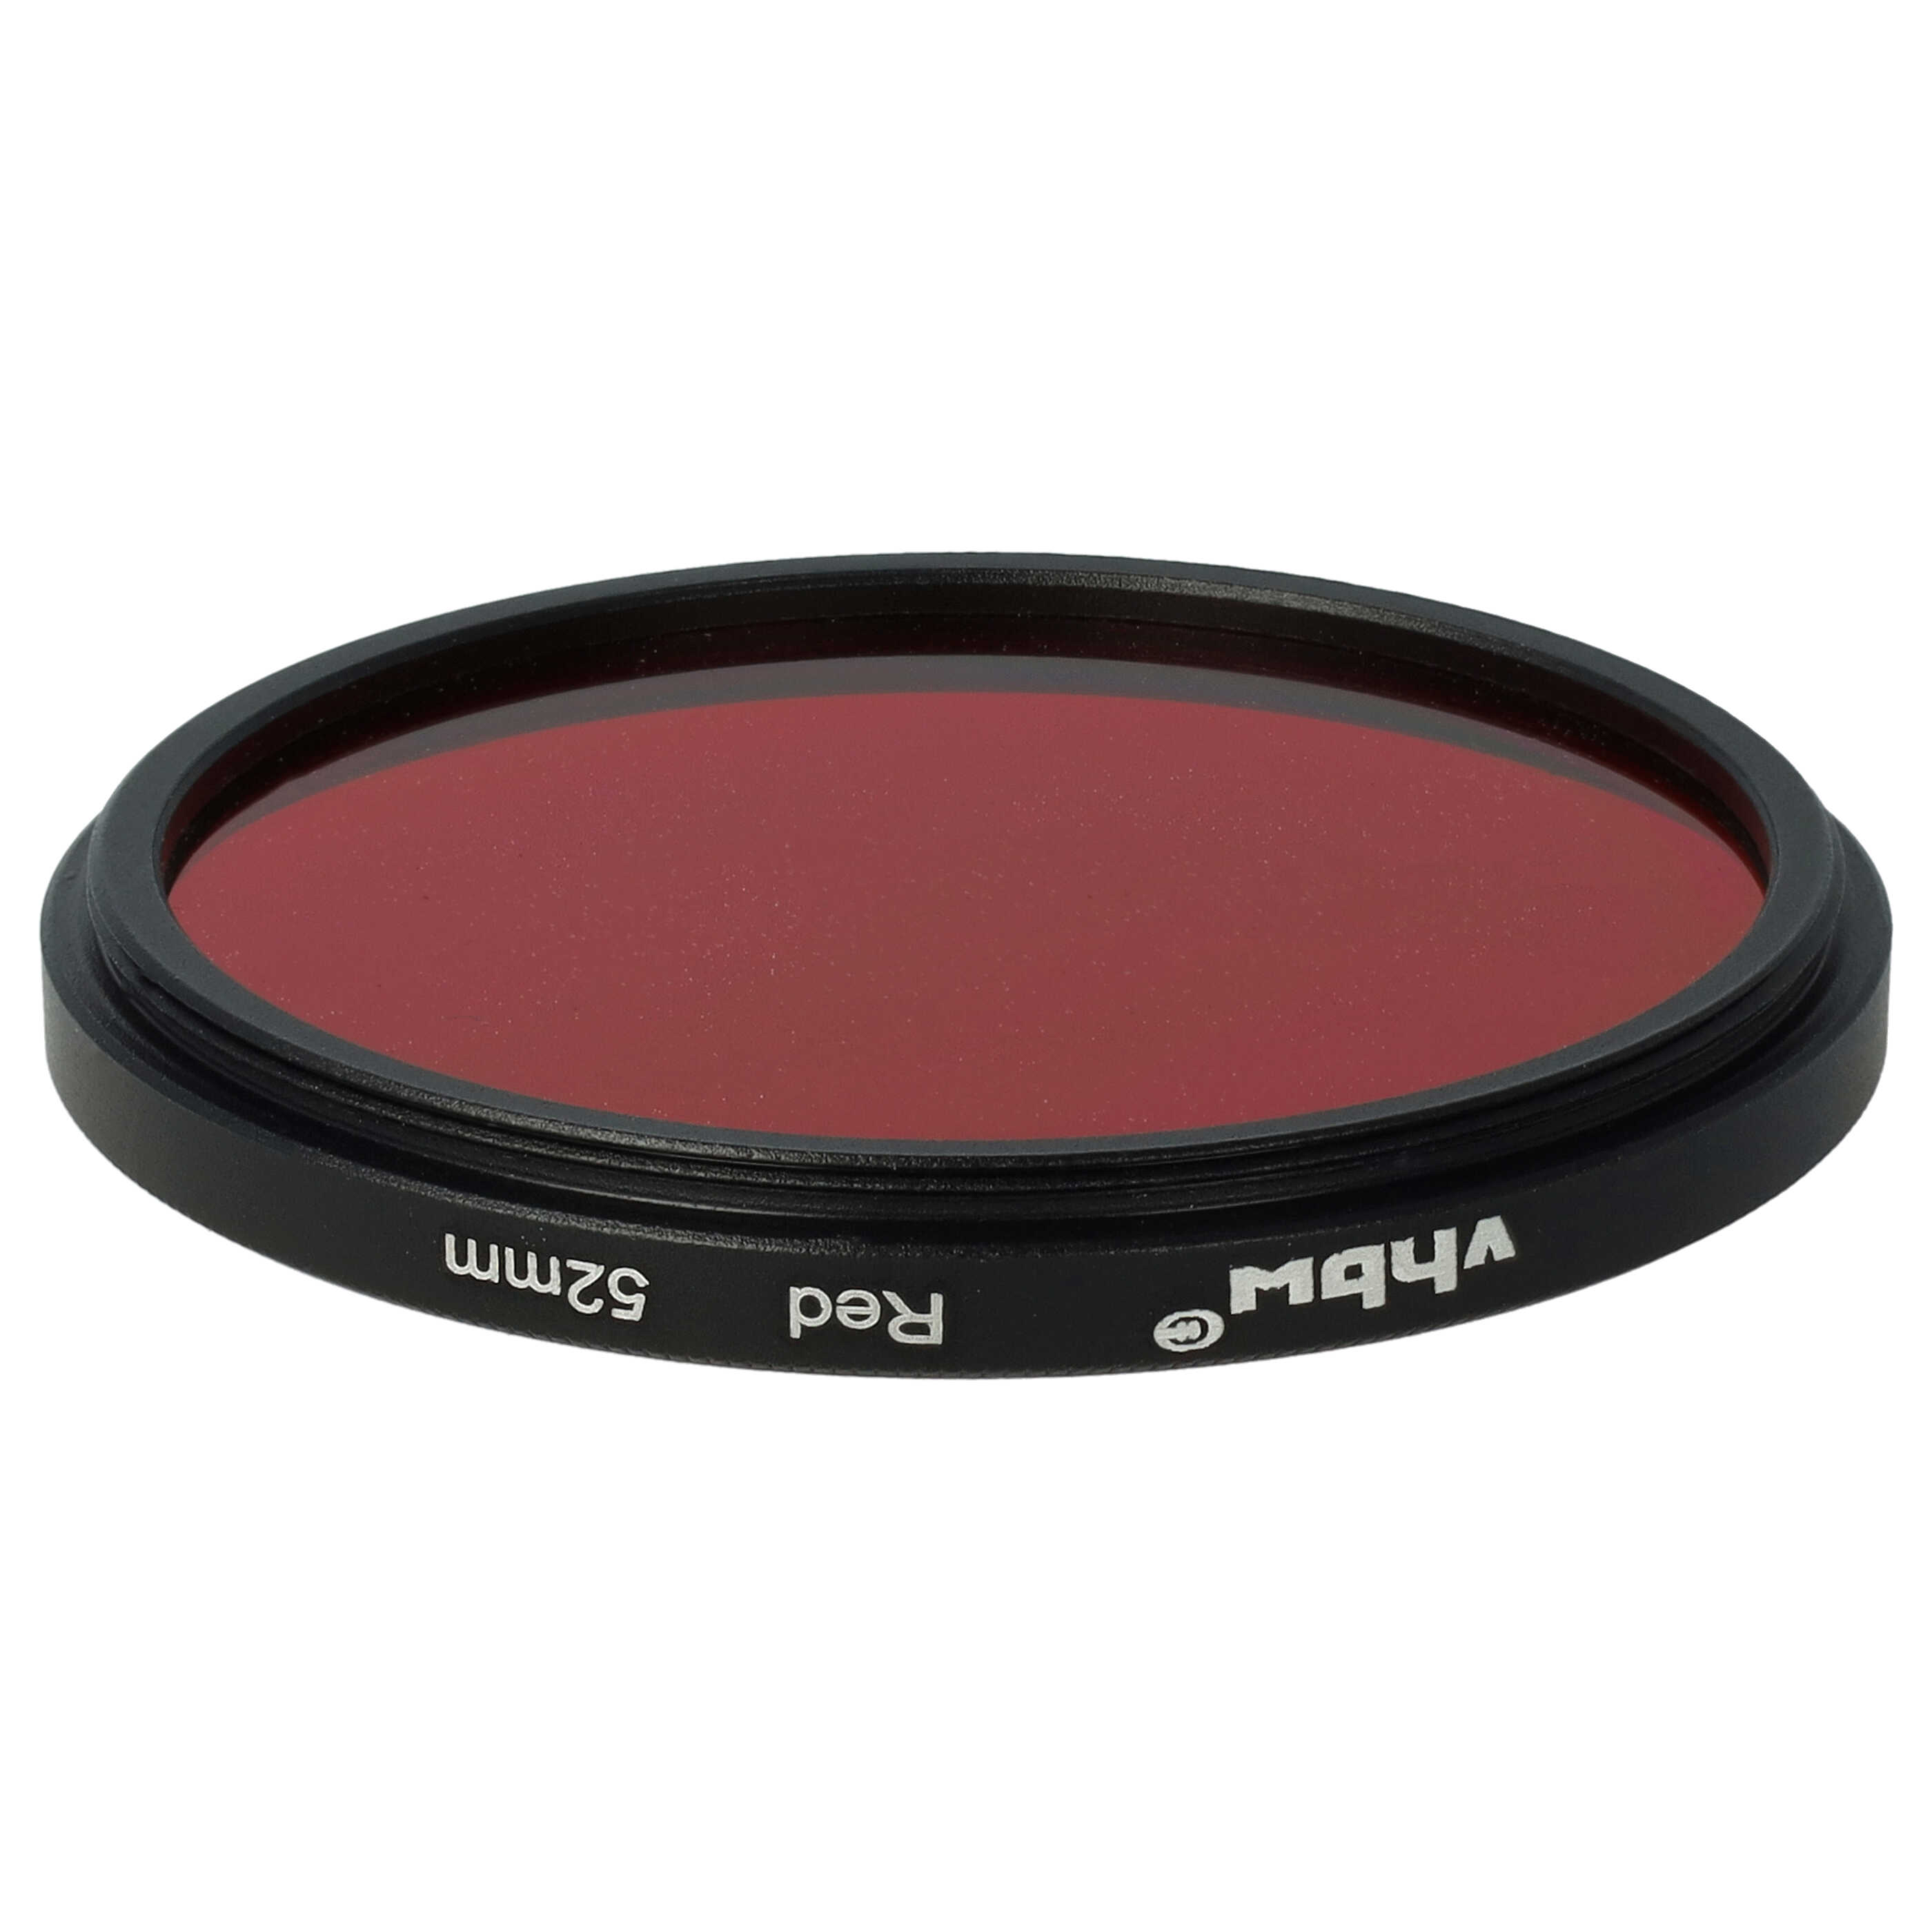 Filtr fotograficzny na obiektywy z gwintem 52 mm - filtr czerwony